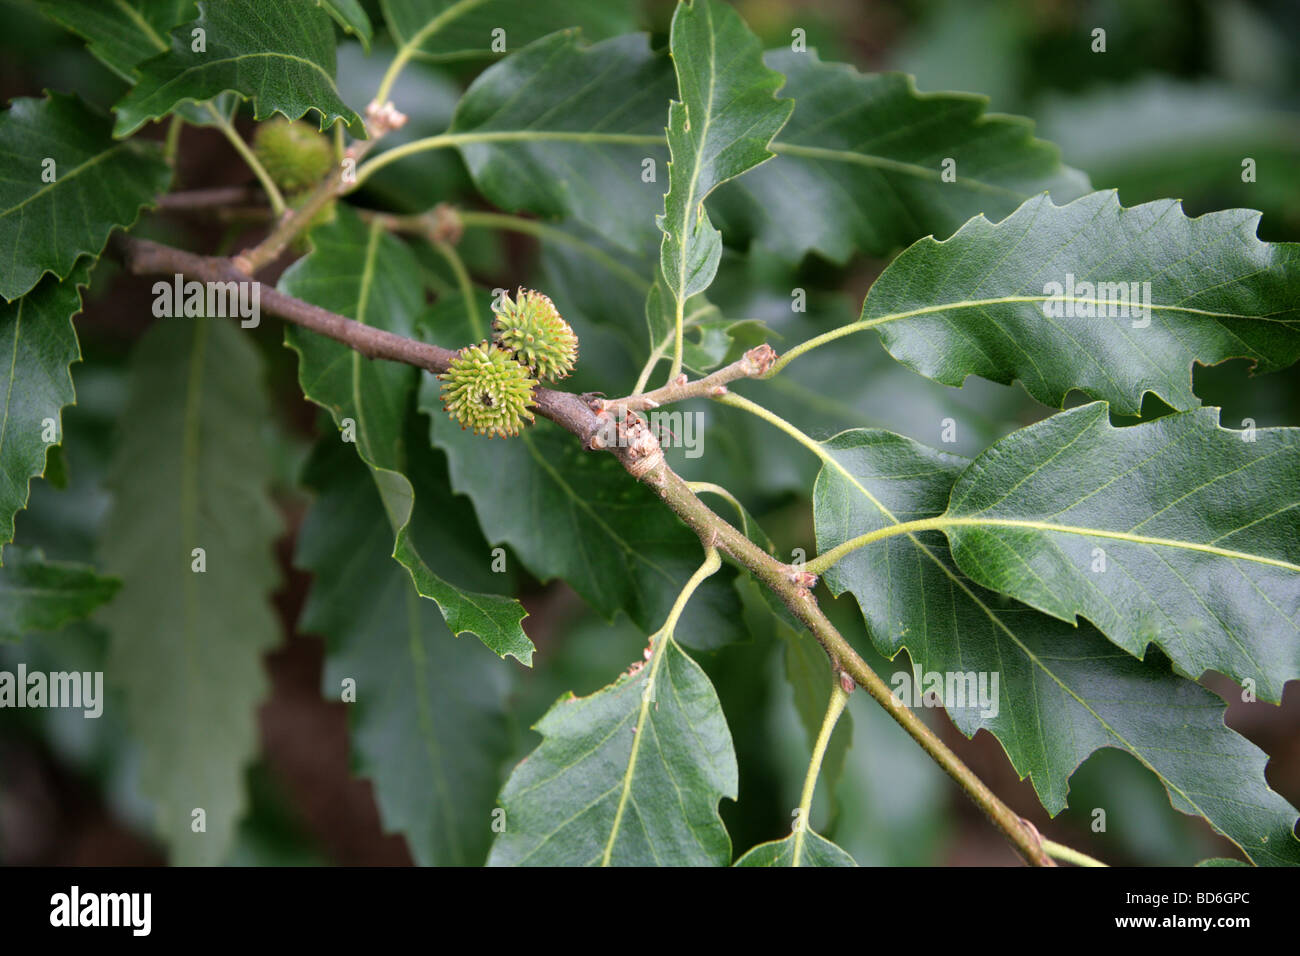 Chêne à feuilles de châtaignier de feuilles d'arbres, Quercus castaneifolia, Fagaceae, du Caucase et d'Iran. Banque D'Images